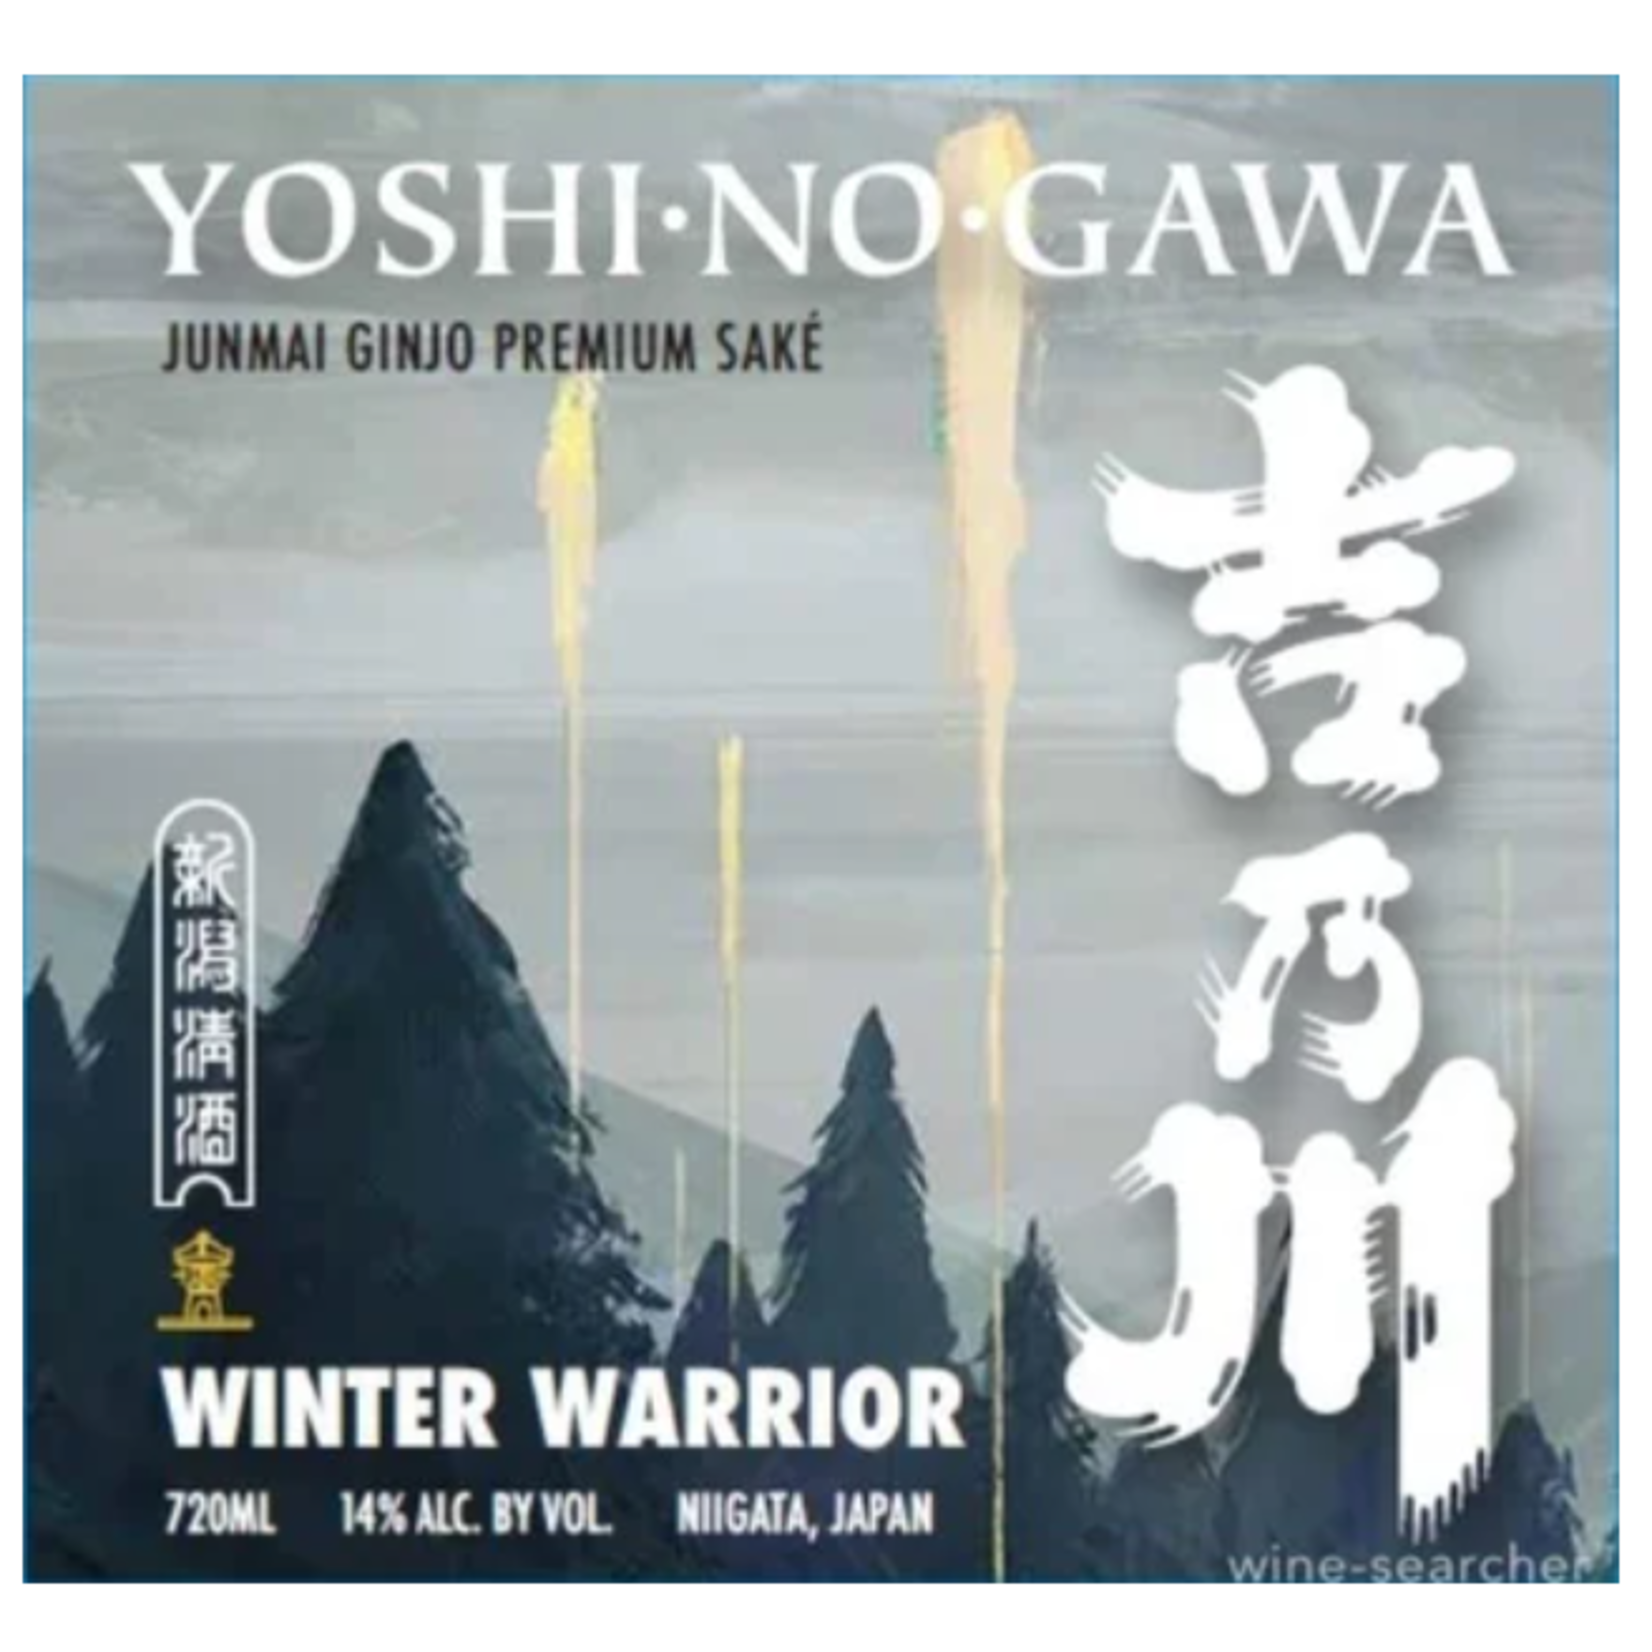 Yoshi No Gawa Yoshi No Gawa Winter Warrior Junmai Ginjo Premium Saké  Japan 720 ml